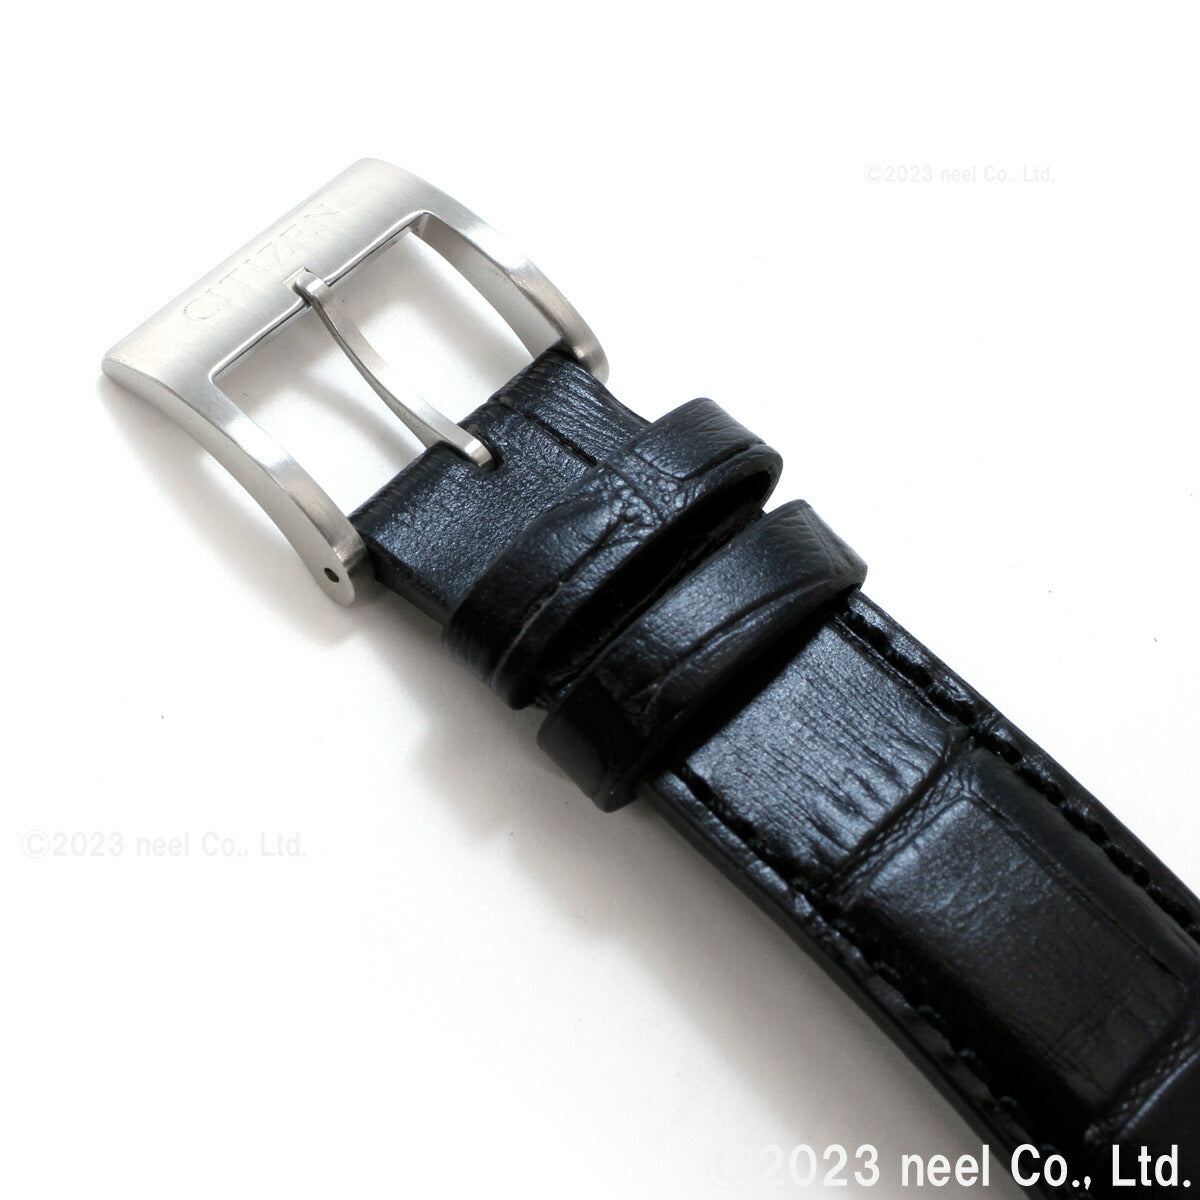 シチズンコレクション CITIZEN COLLECTION メカニカル 自動巻き 機械式 腕時計 メンズ NH9111-11B